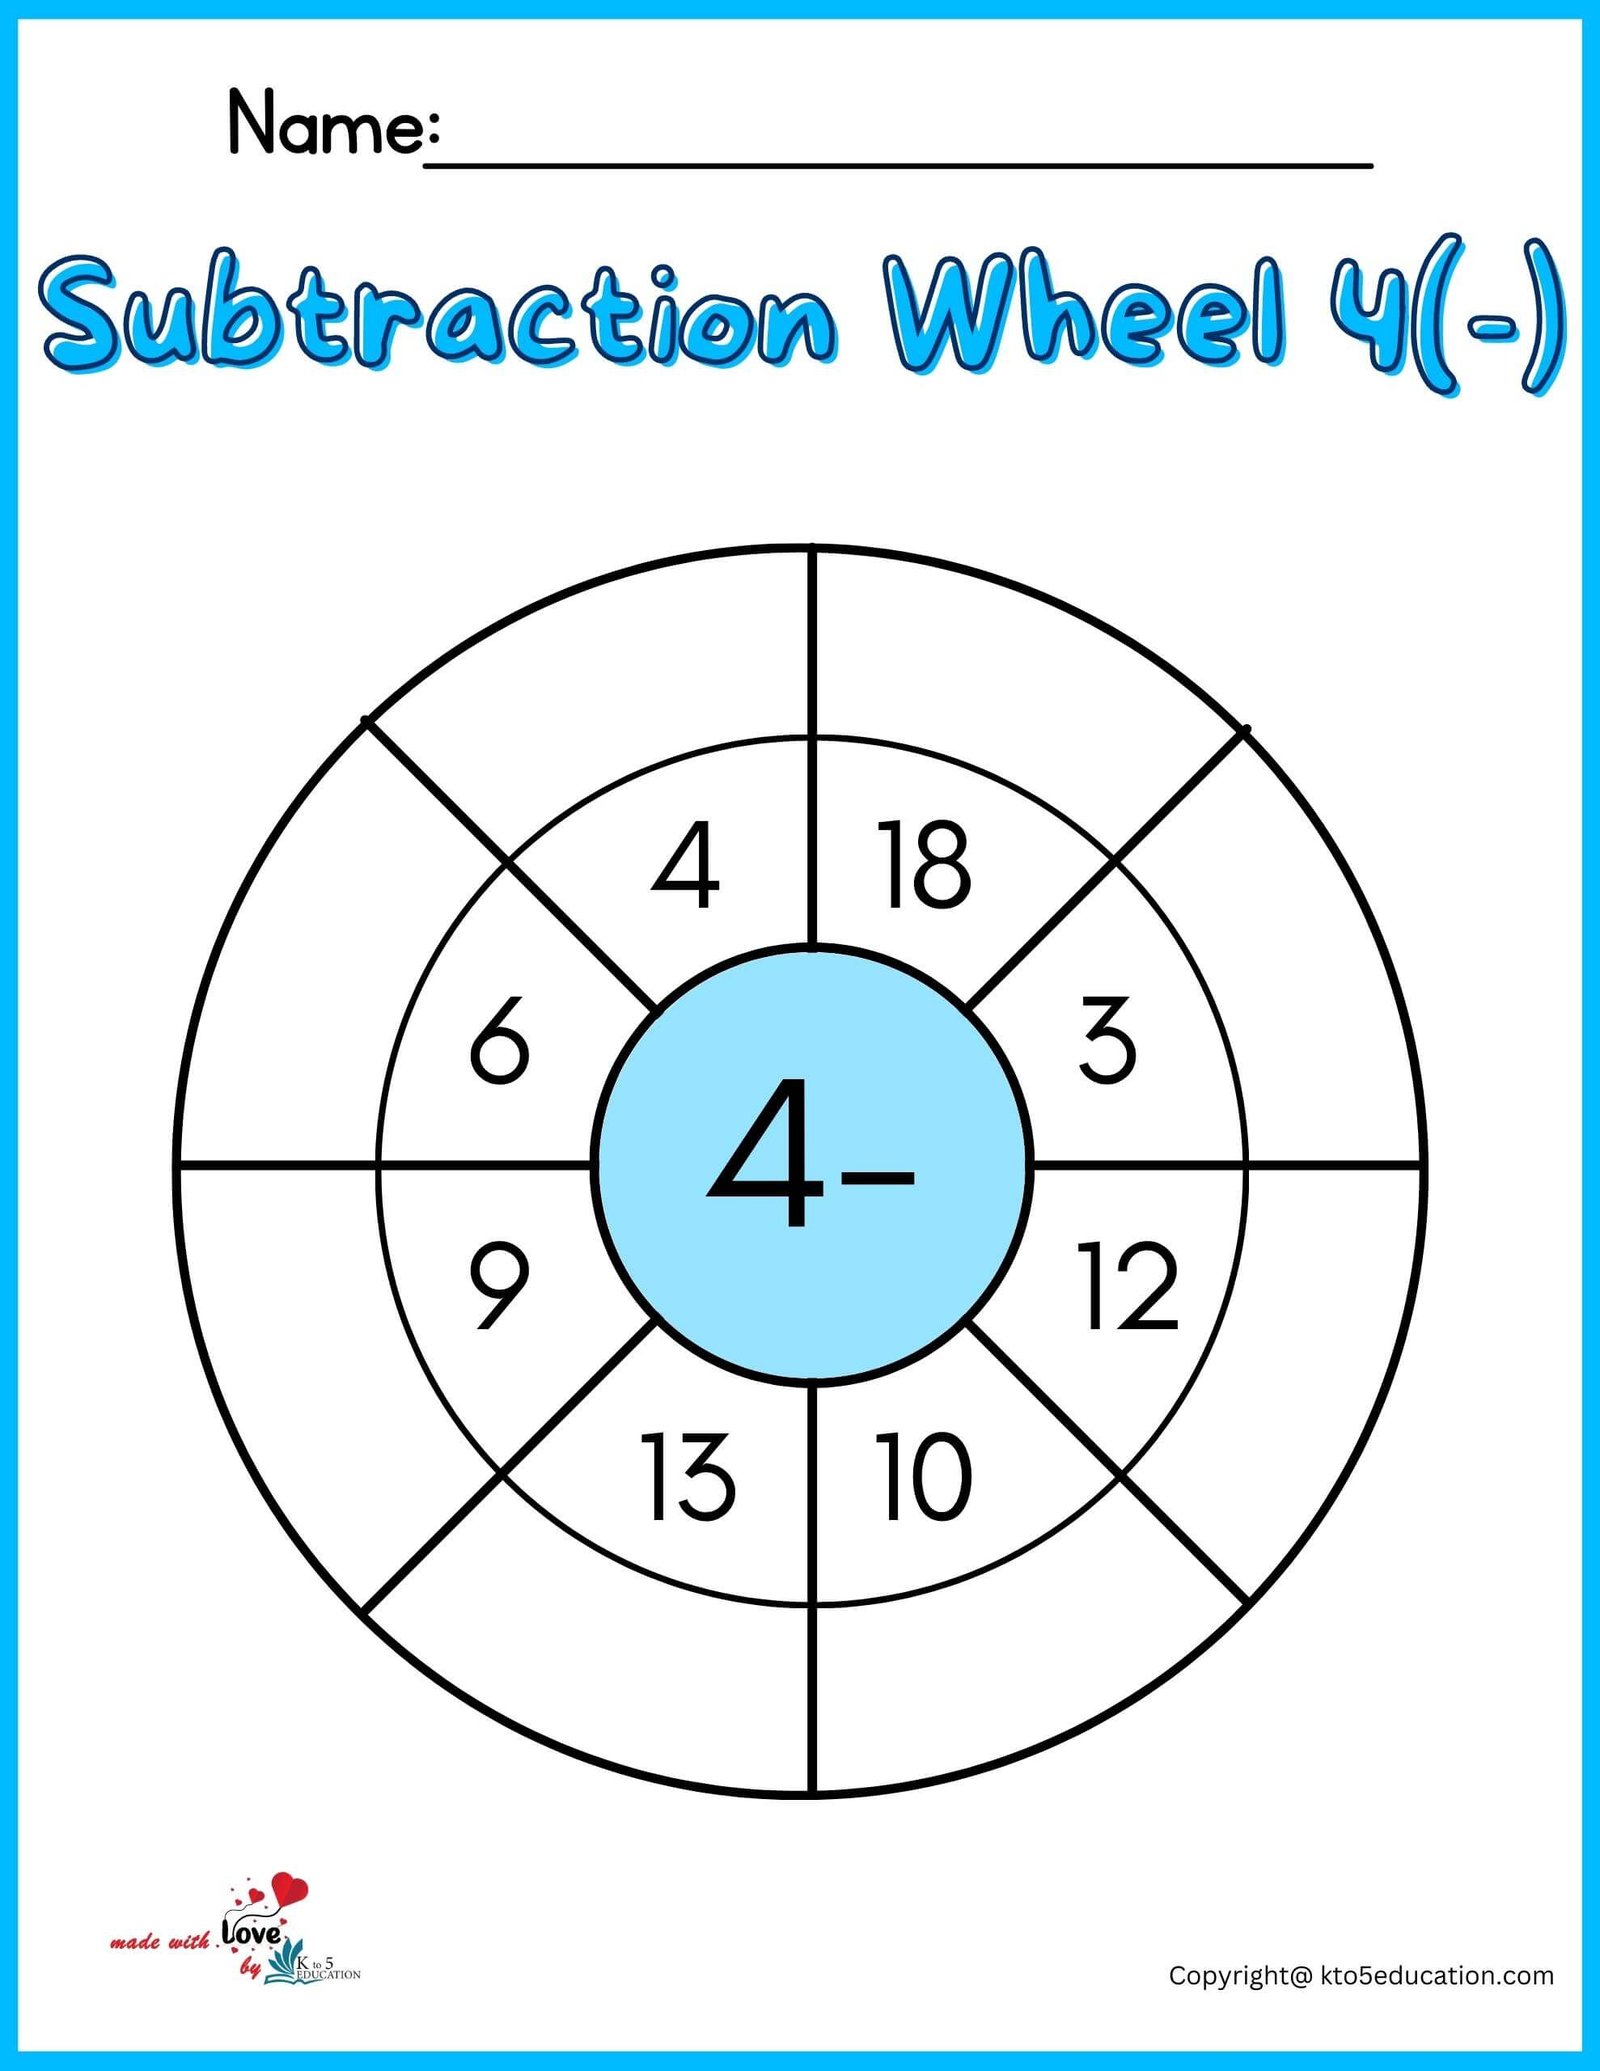 Subtraction Wheel Worksheet